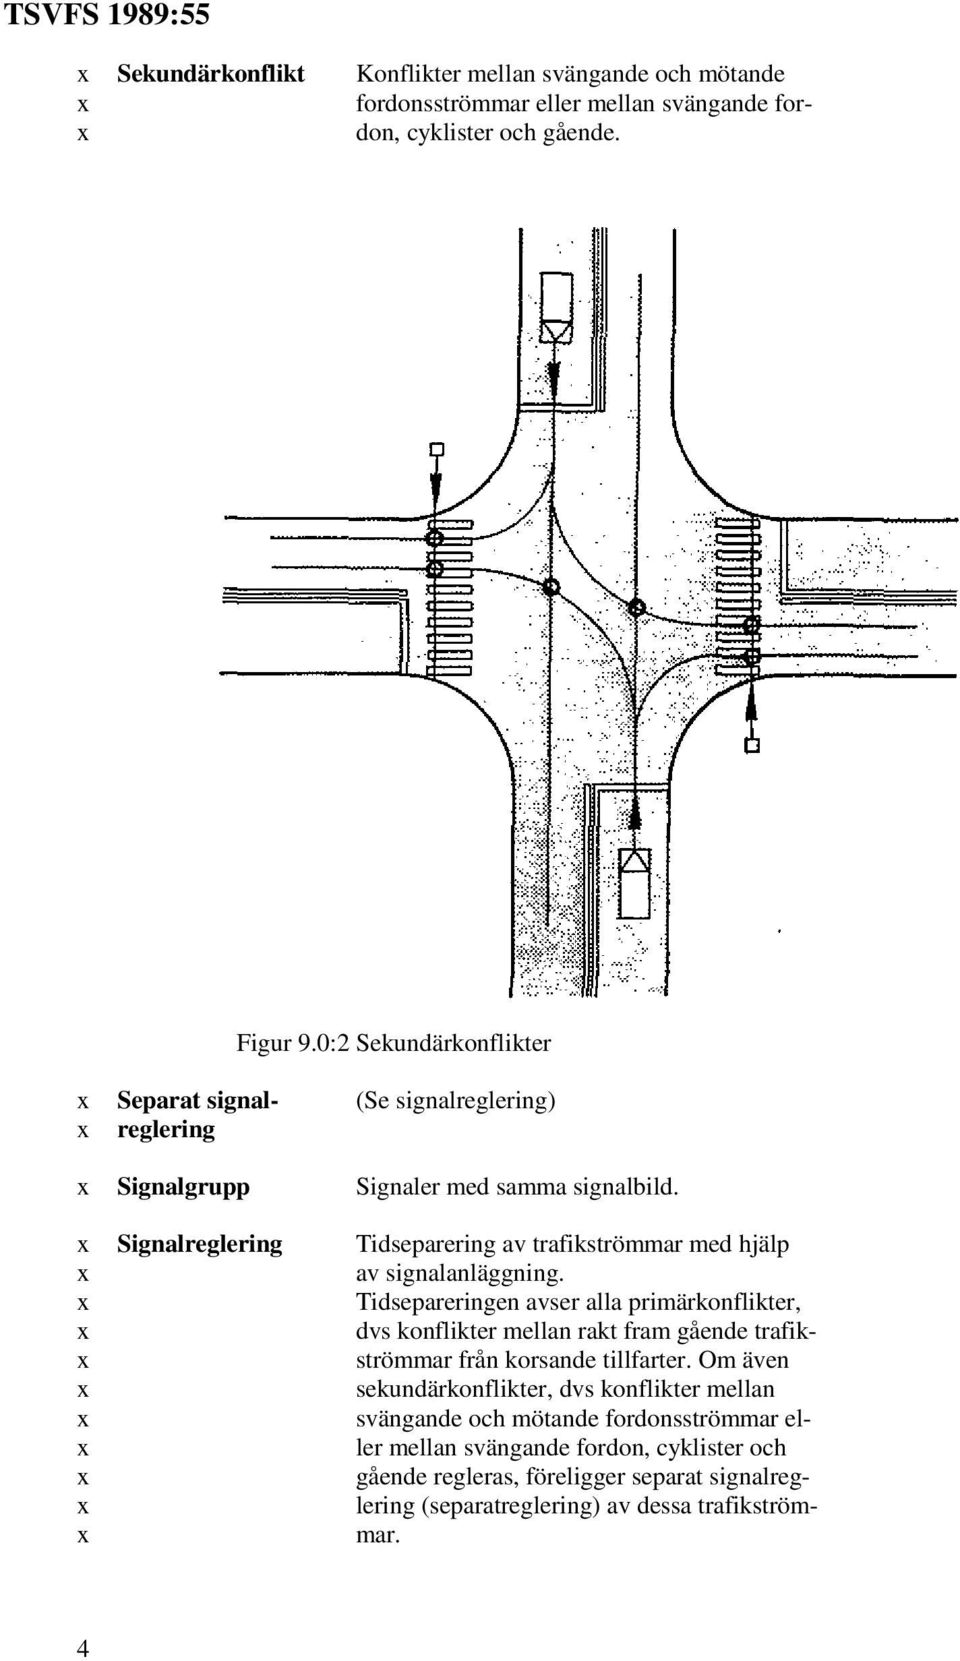 Signalreglering Tidseparering av trafikströmmar med hjälp av signalanläggning.